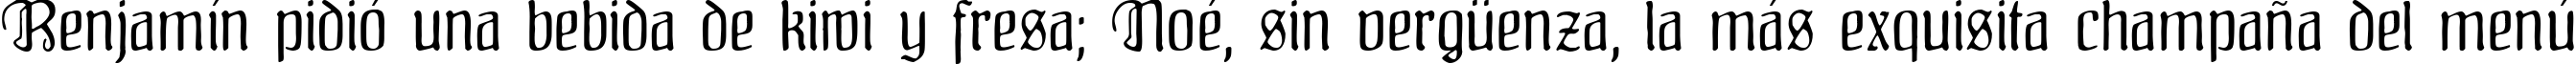 Пример написания шрифтом Fraenkisch текста на испанском